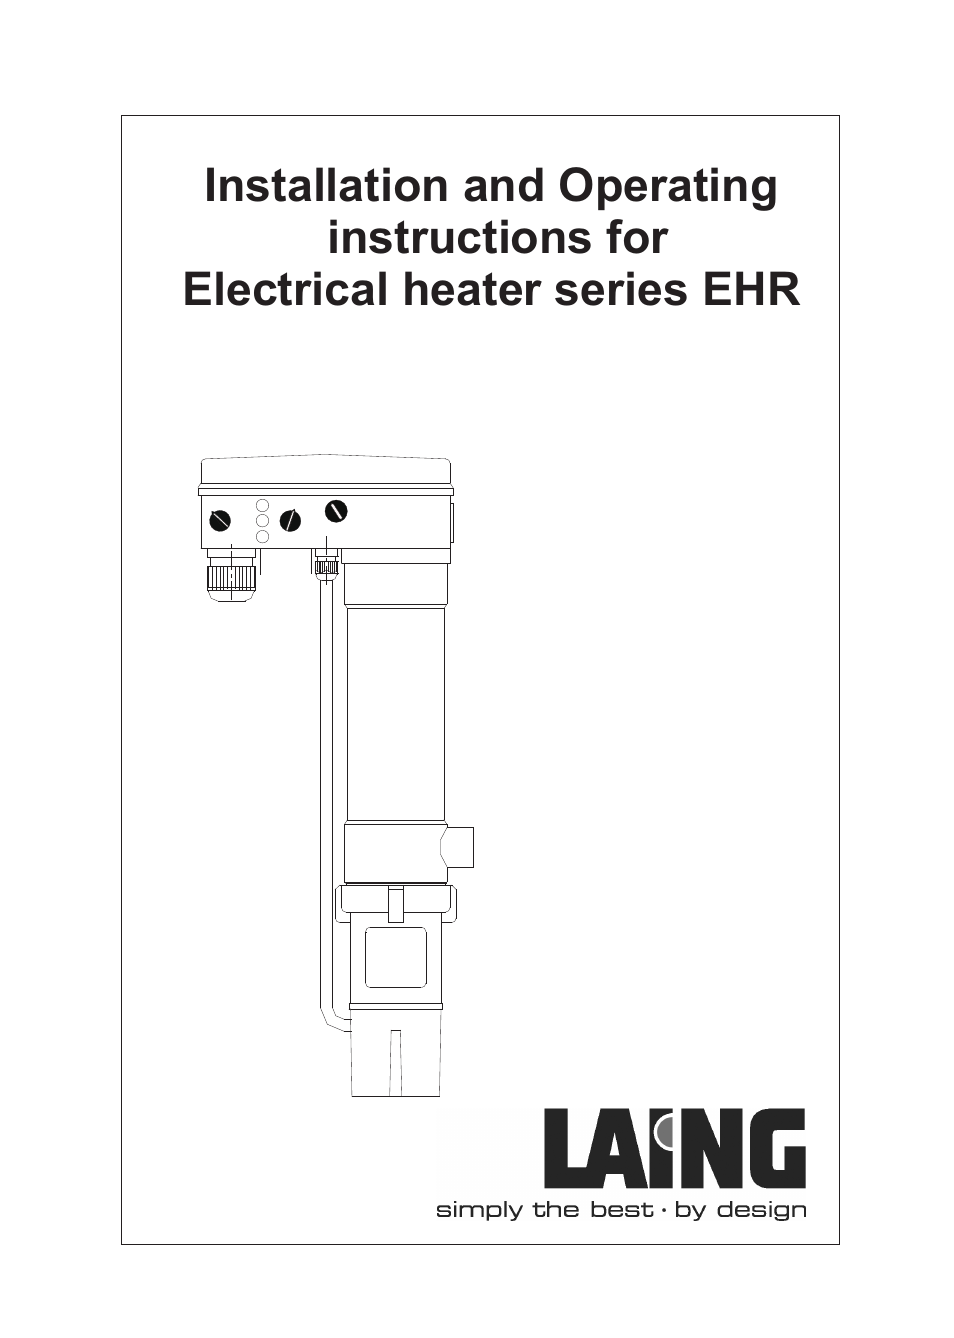 EHR IM Electrical heater series EHR (obsolete)